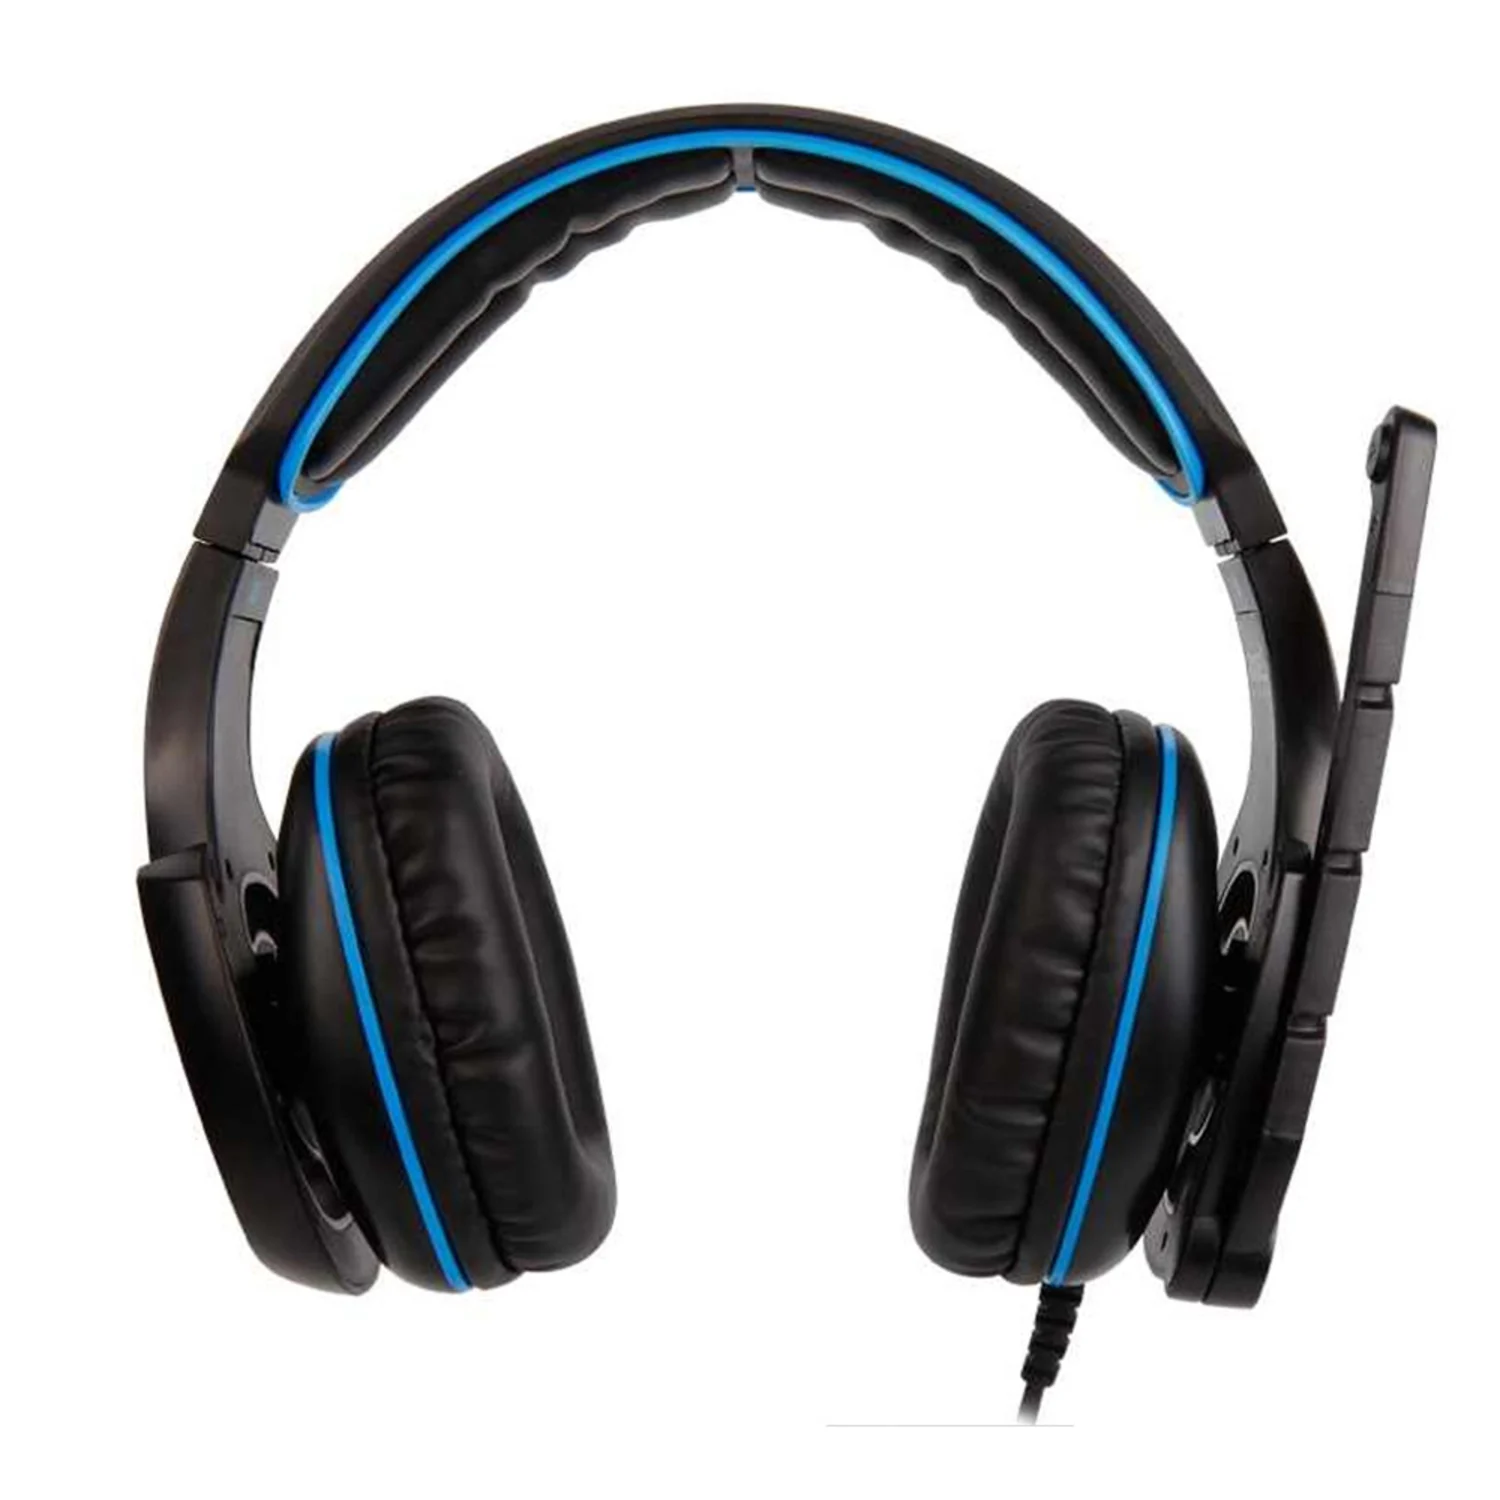 Headset Gamer Sades Hammer SA923 - Preto/Azul